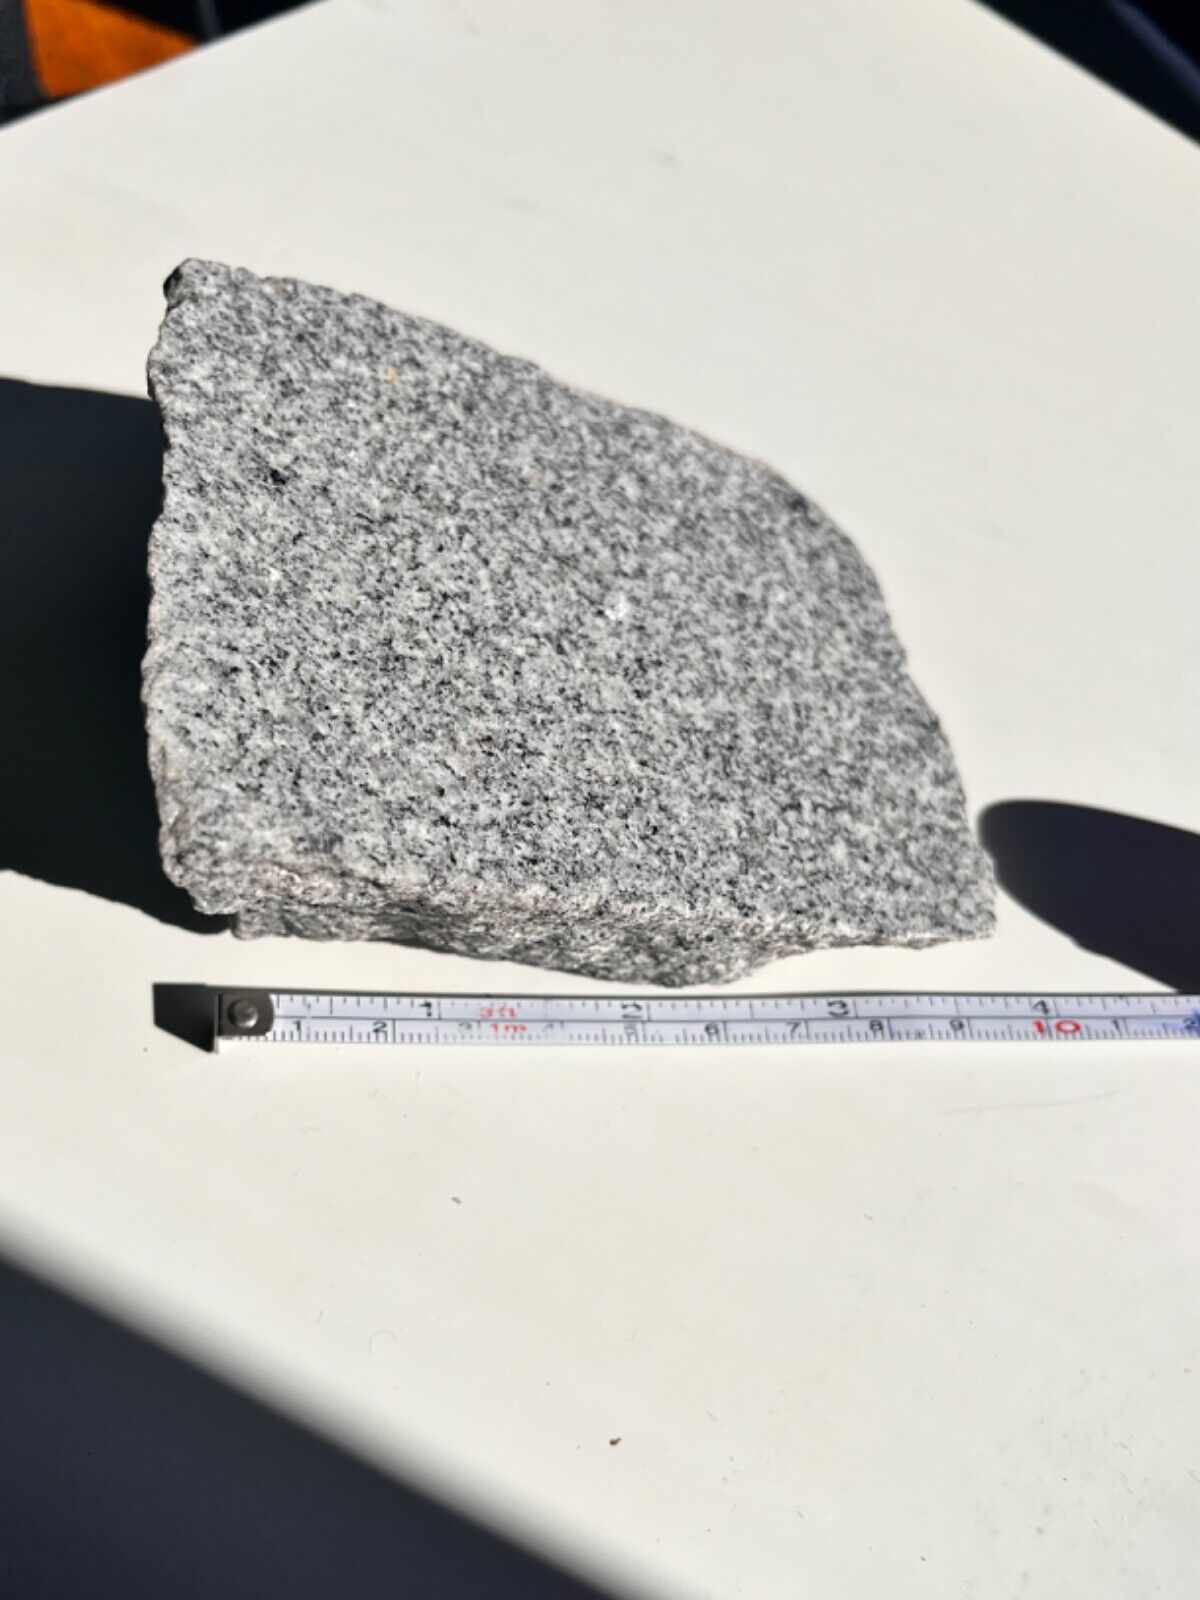 Real Grey White Black Speckled Natural Granite Specimen Rough Boulder Chunk